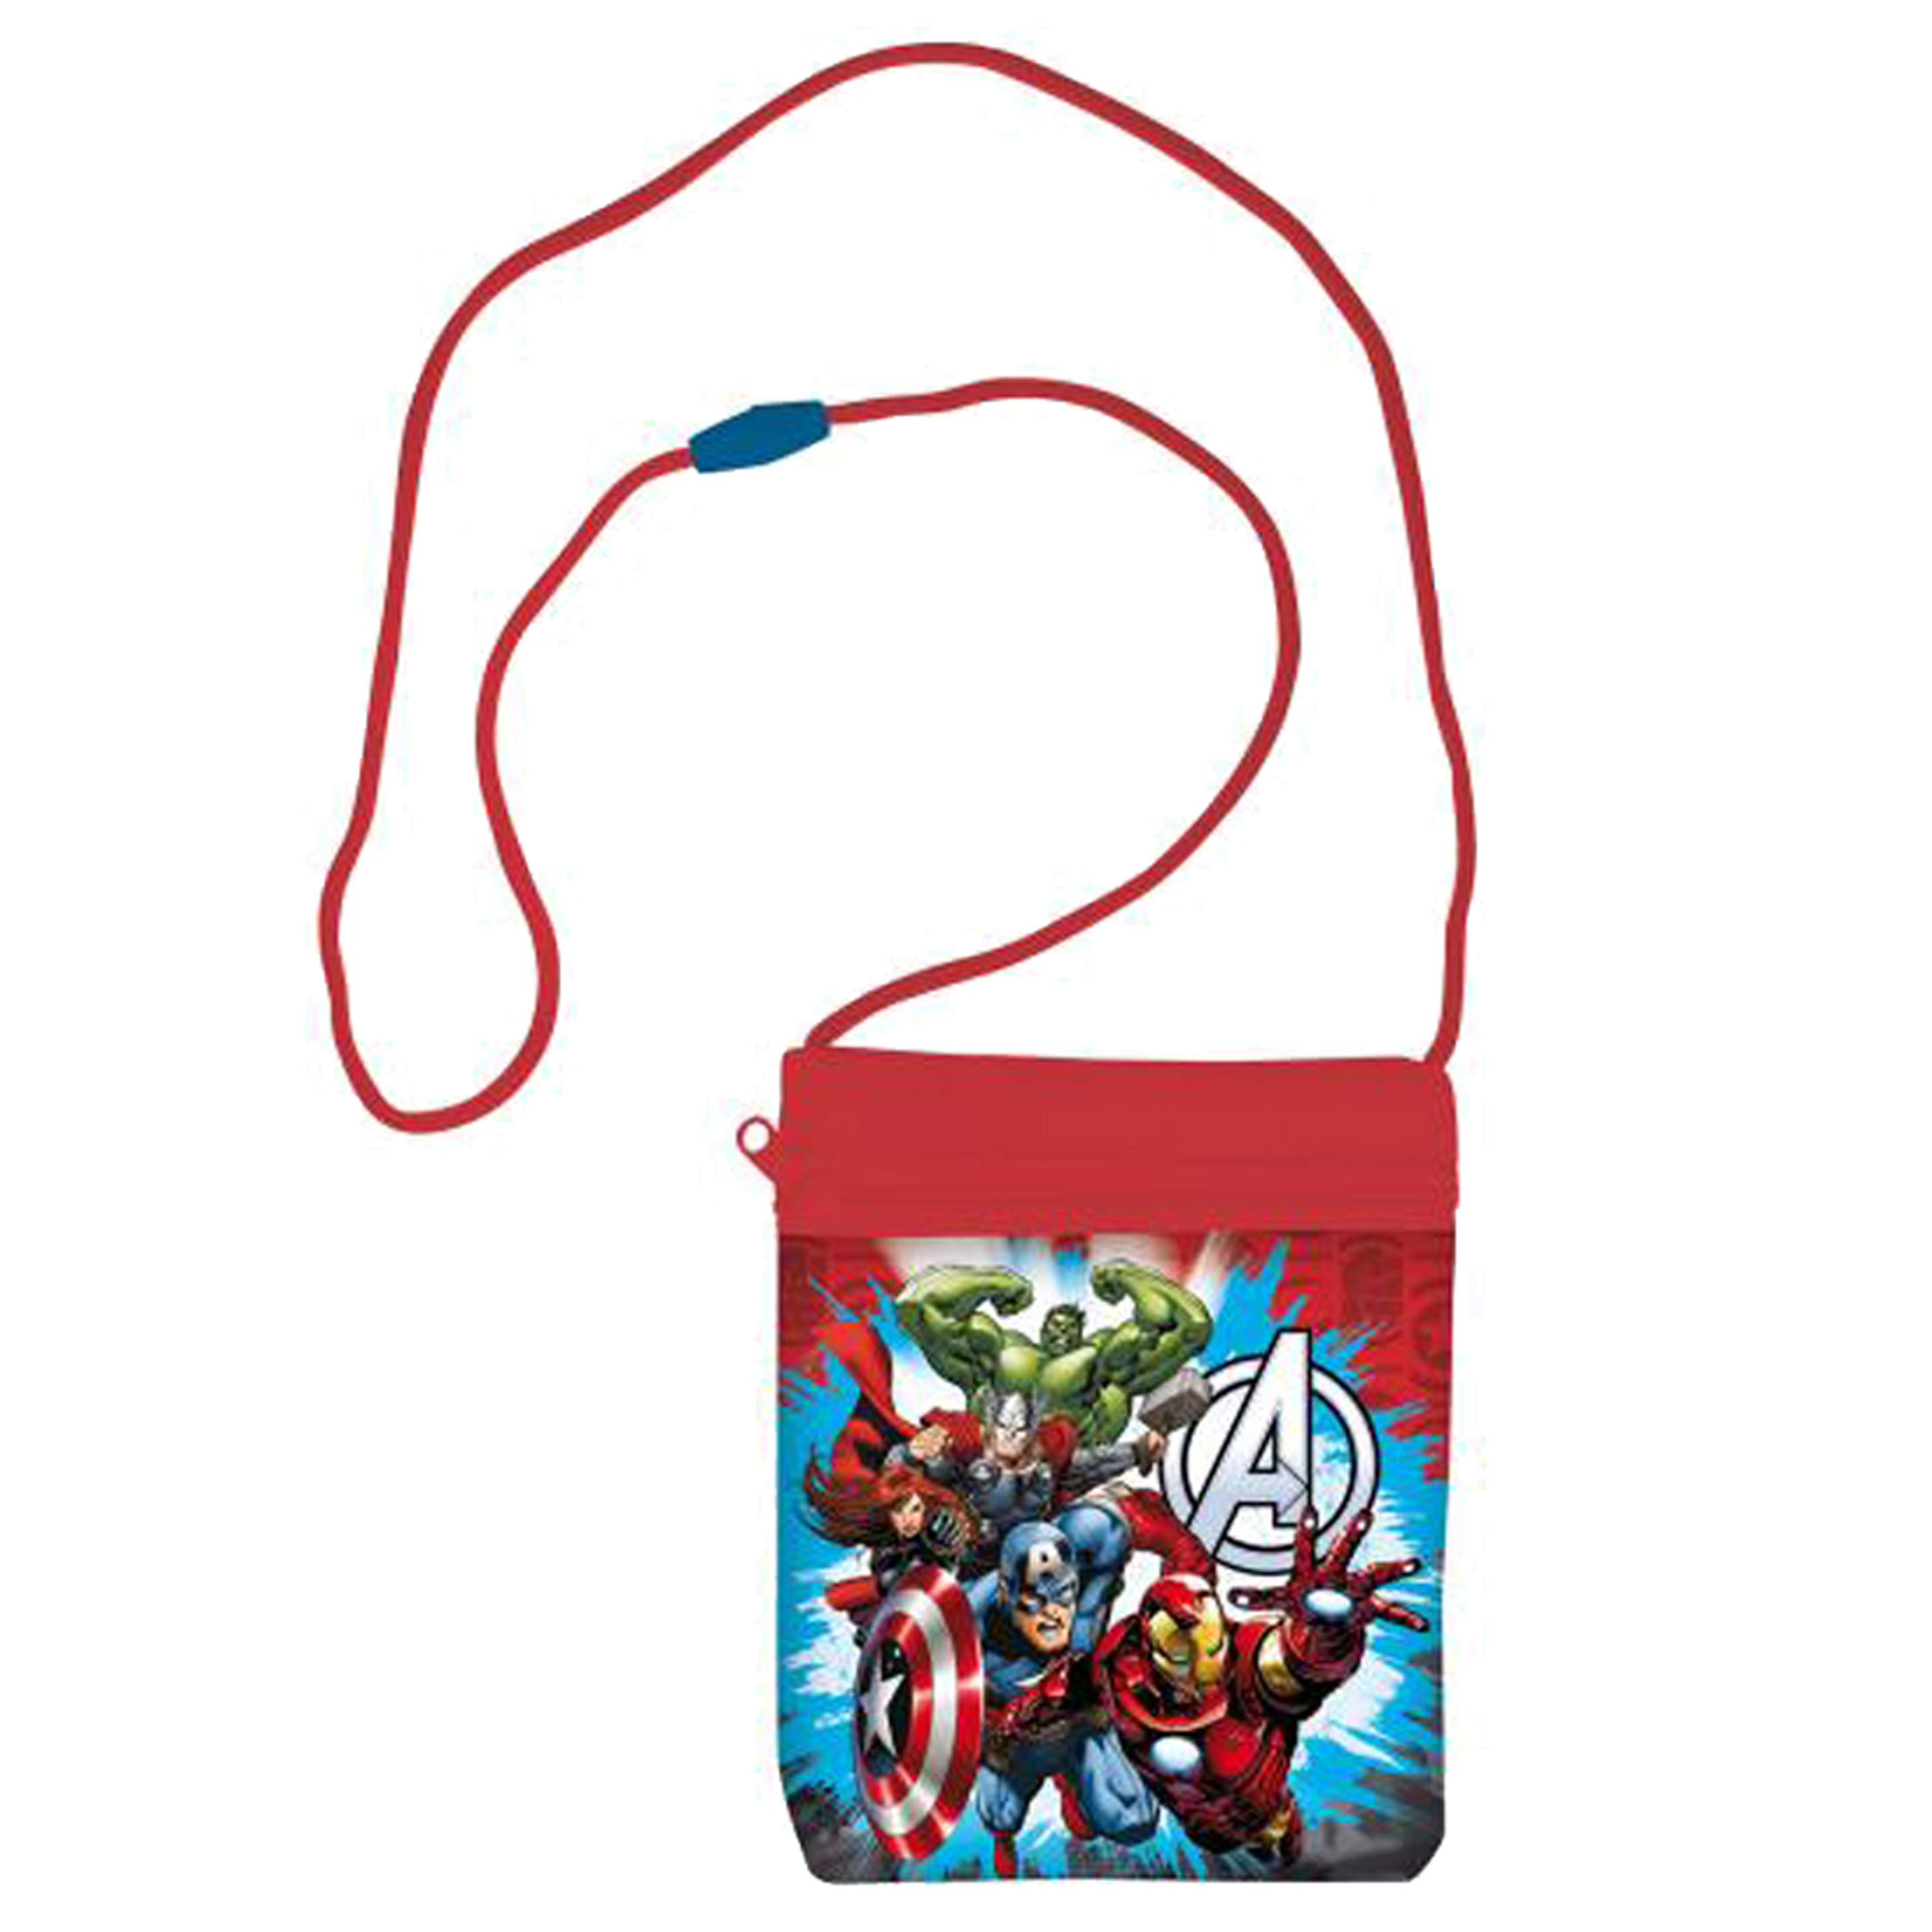 Bandolera Avengers 16x13x0,8cm - multicolor - 